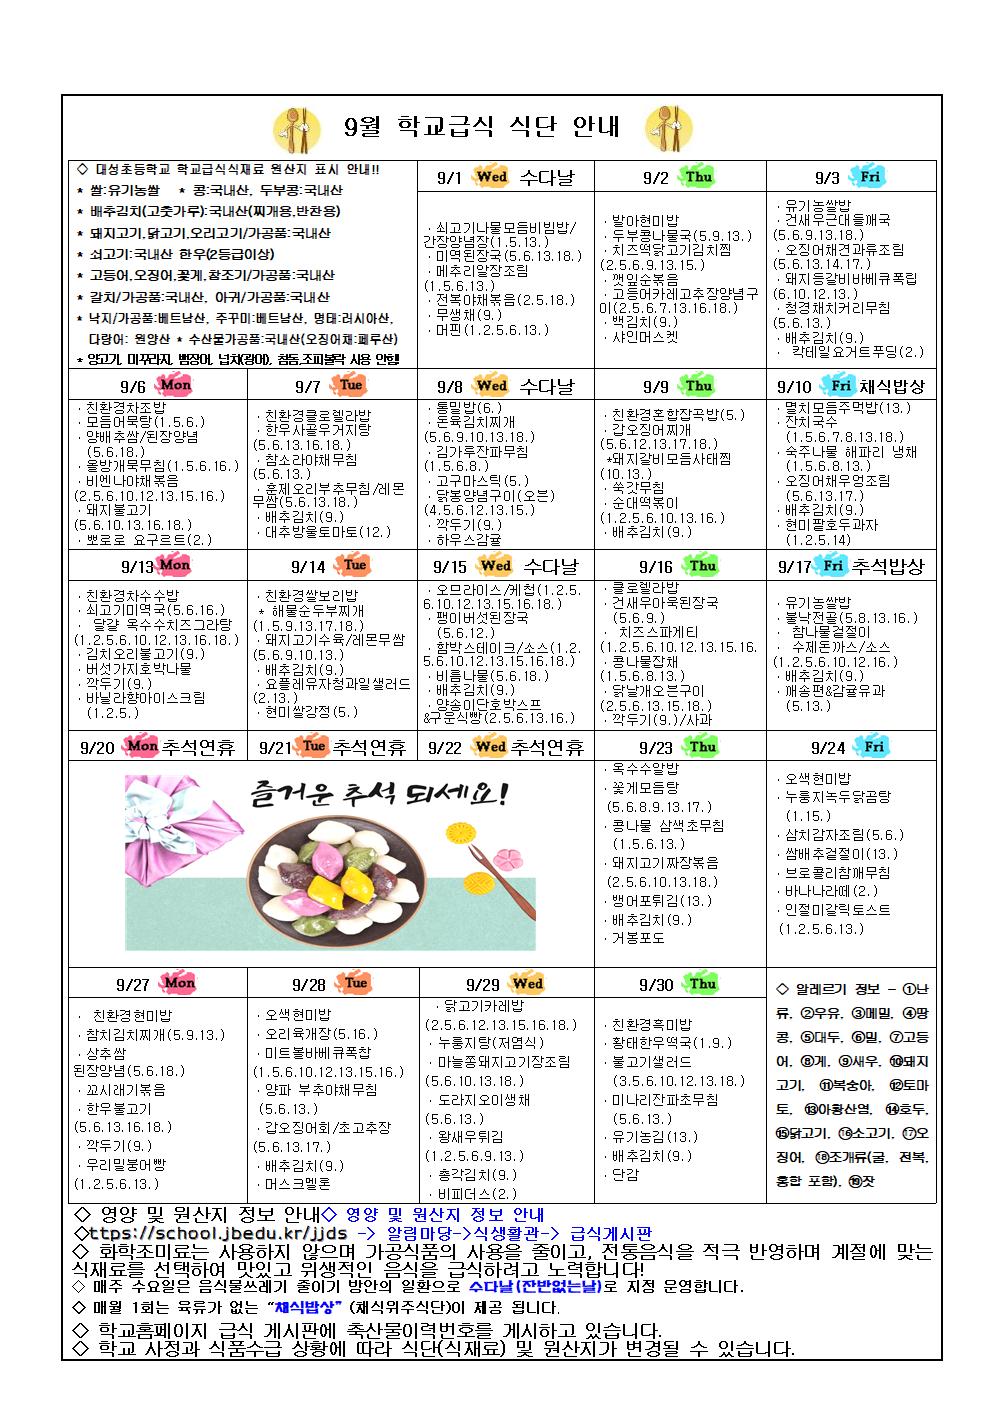 제51호 - 2021. 9월 영양소식(식단안내)지-추석, 코로나19대응 학교급식운영002